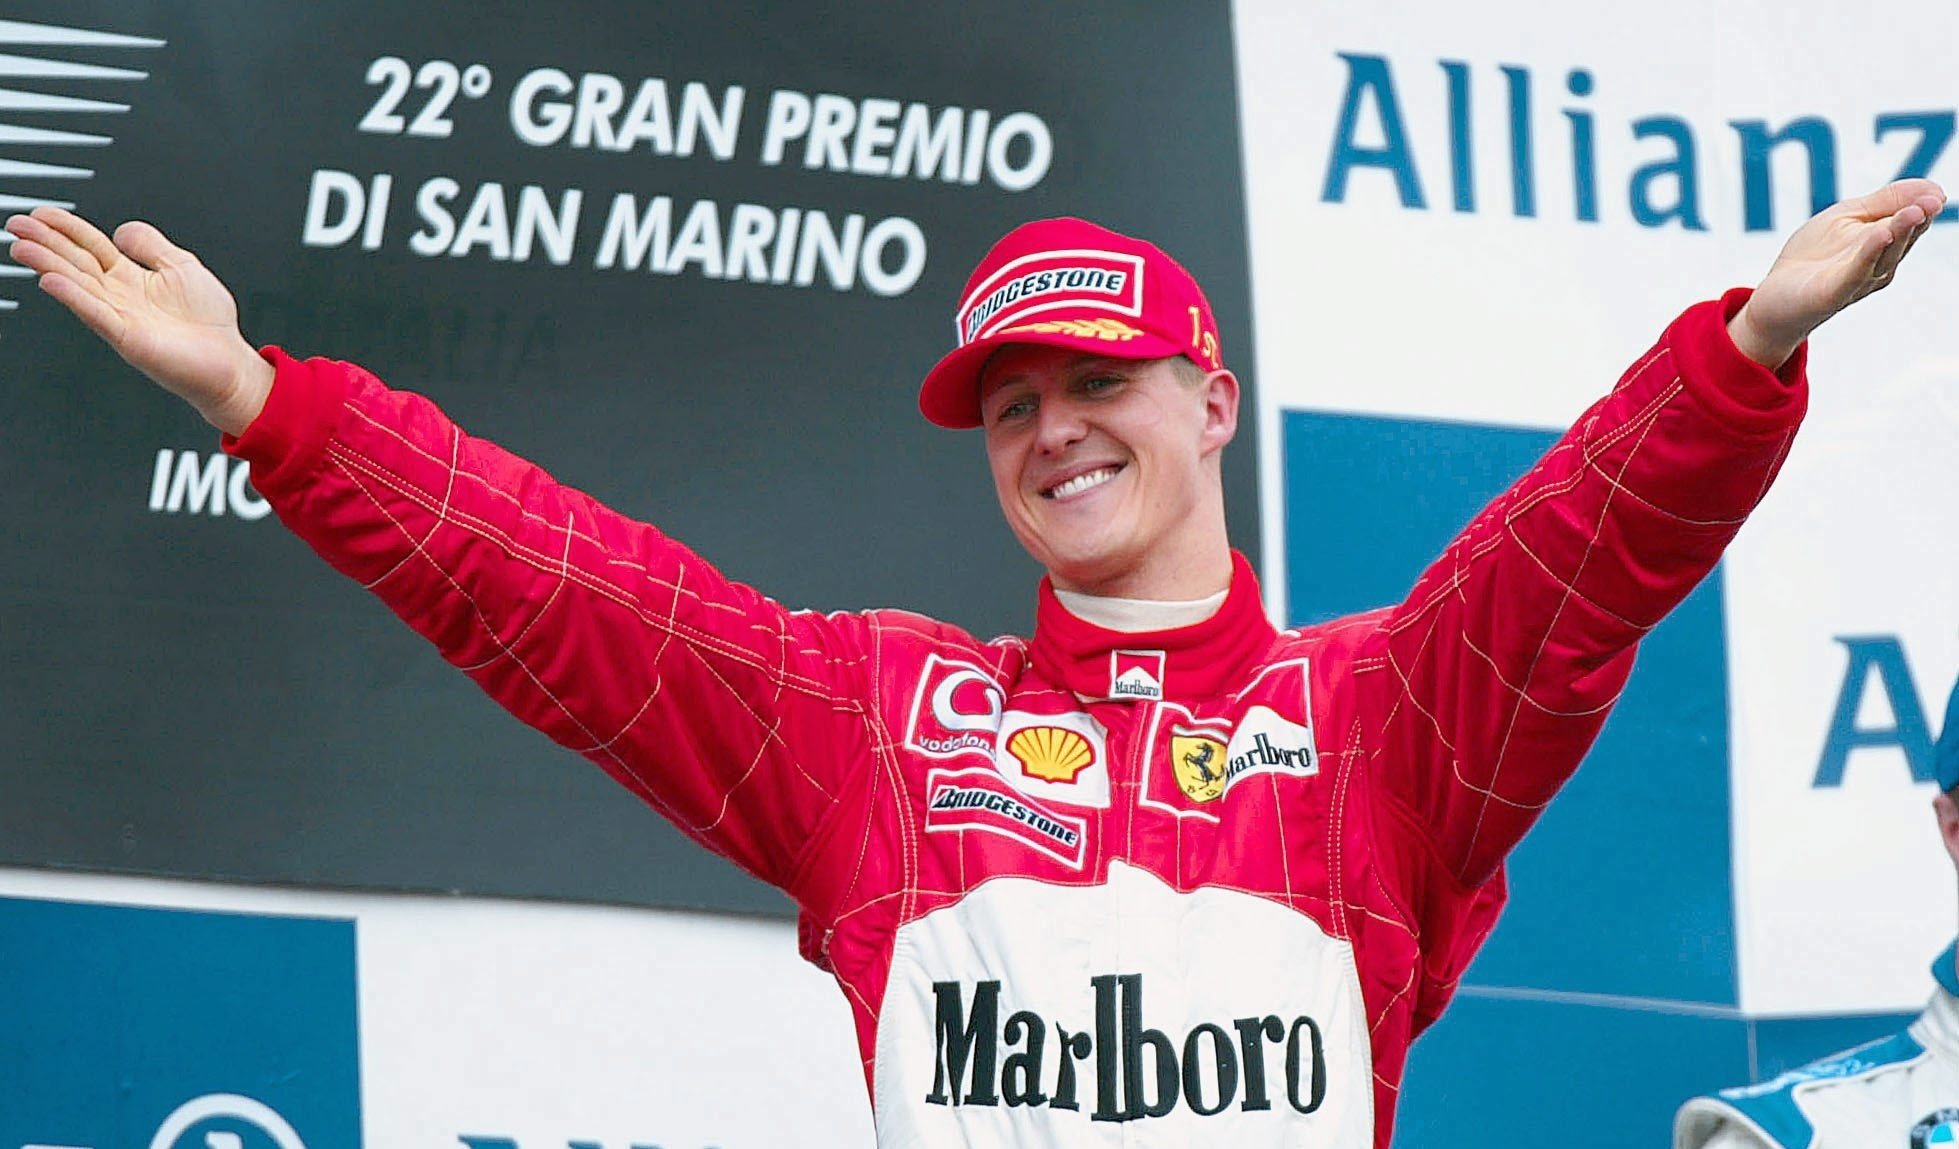 L'Allemand Michael Schumacher, sept fois champion du monde de Formule 1, assiste au GP de SAN MARINO 2002. | Photo : Getty Images